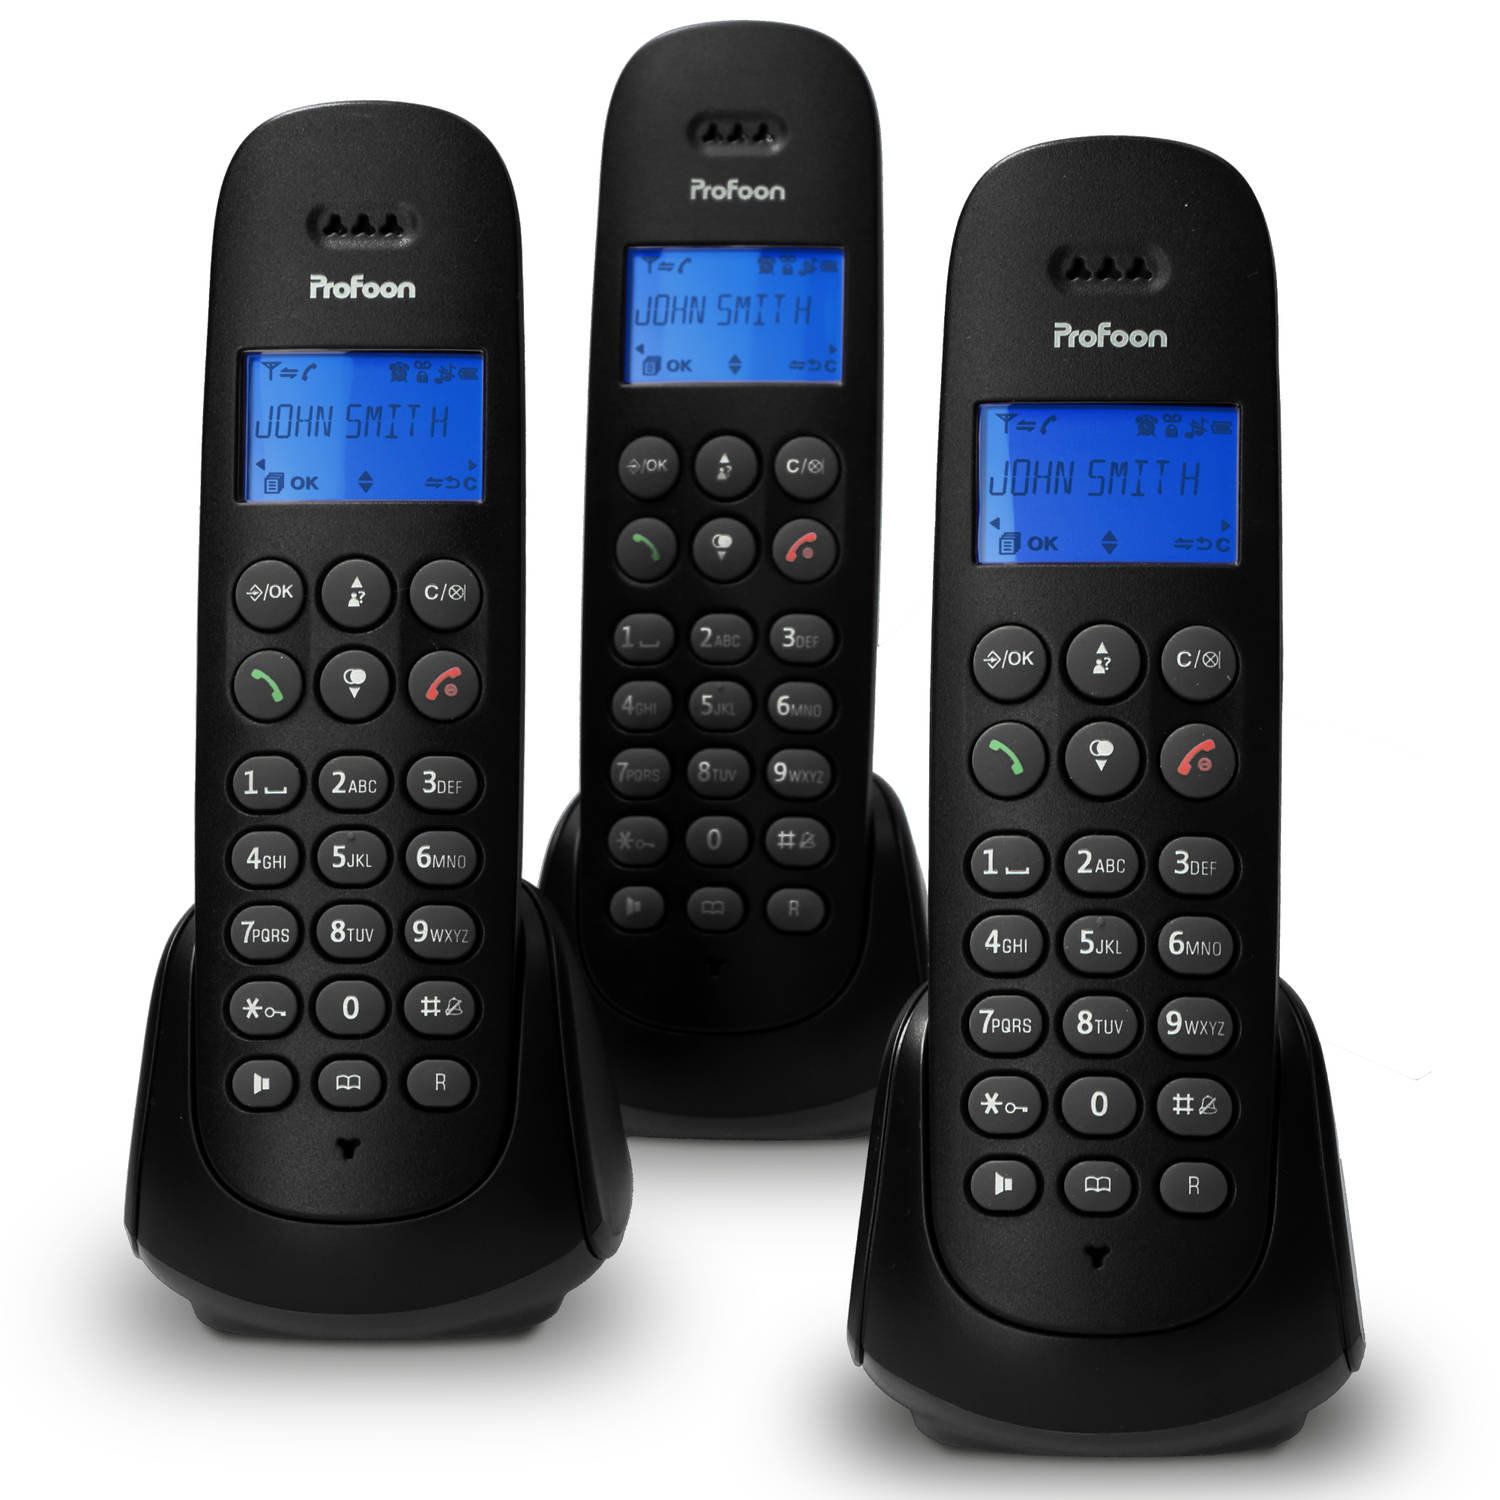 Profoon Pdx-300 Triple Dect Telefoon Met 3 Handsets, Zwart